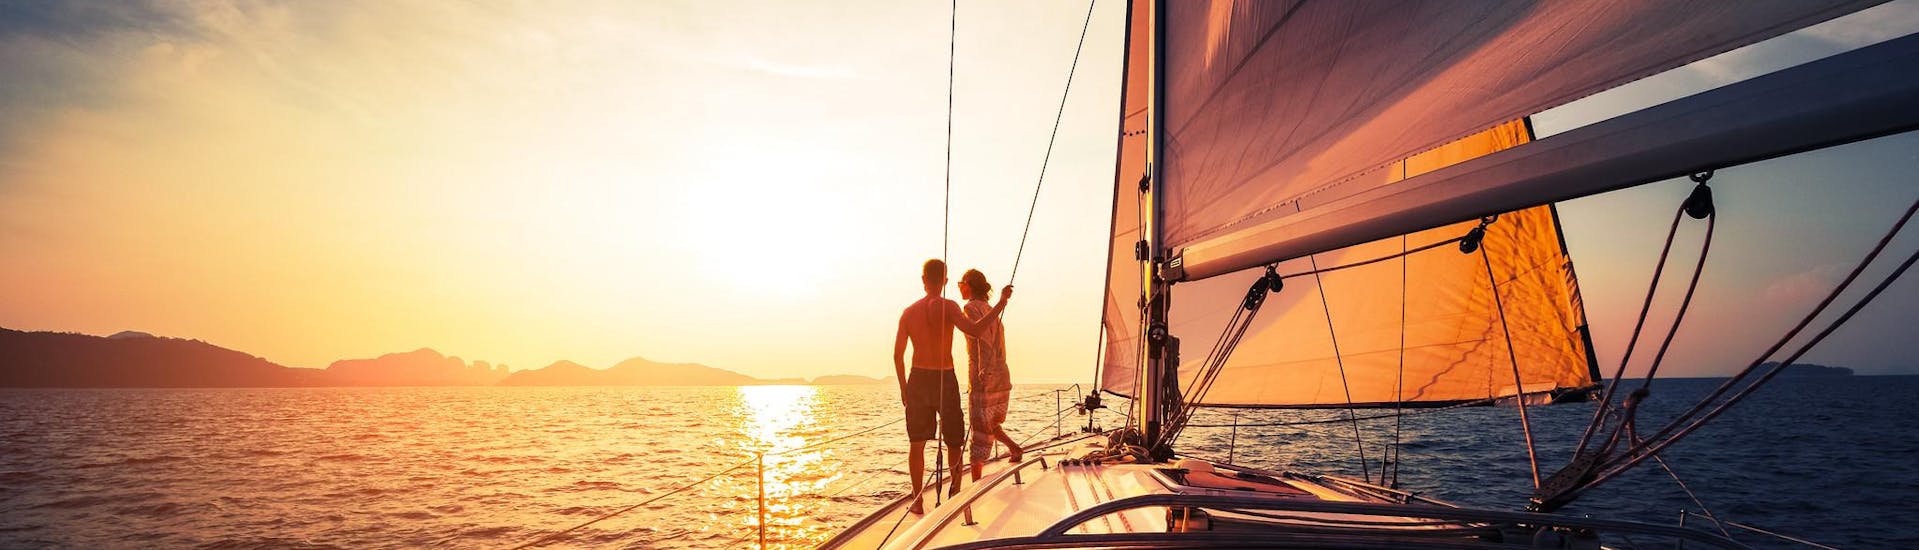 Una pareja disfrutando de un paseo romántico en barco.